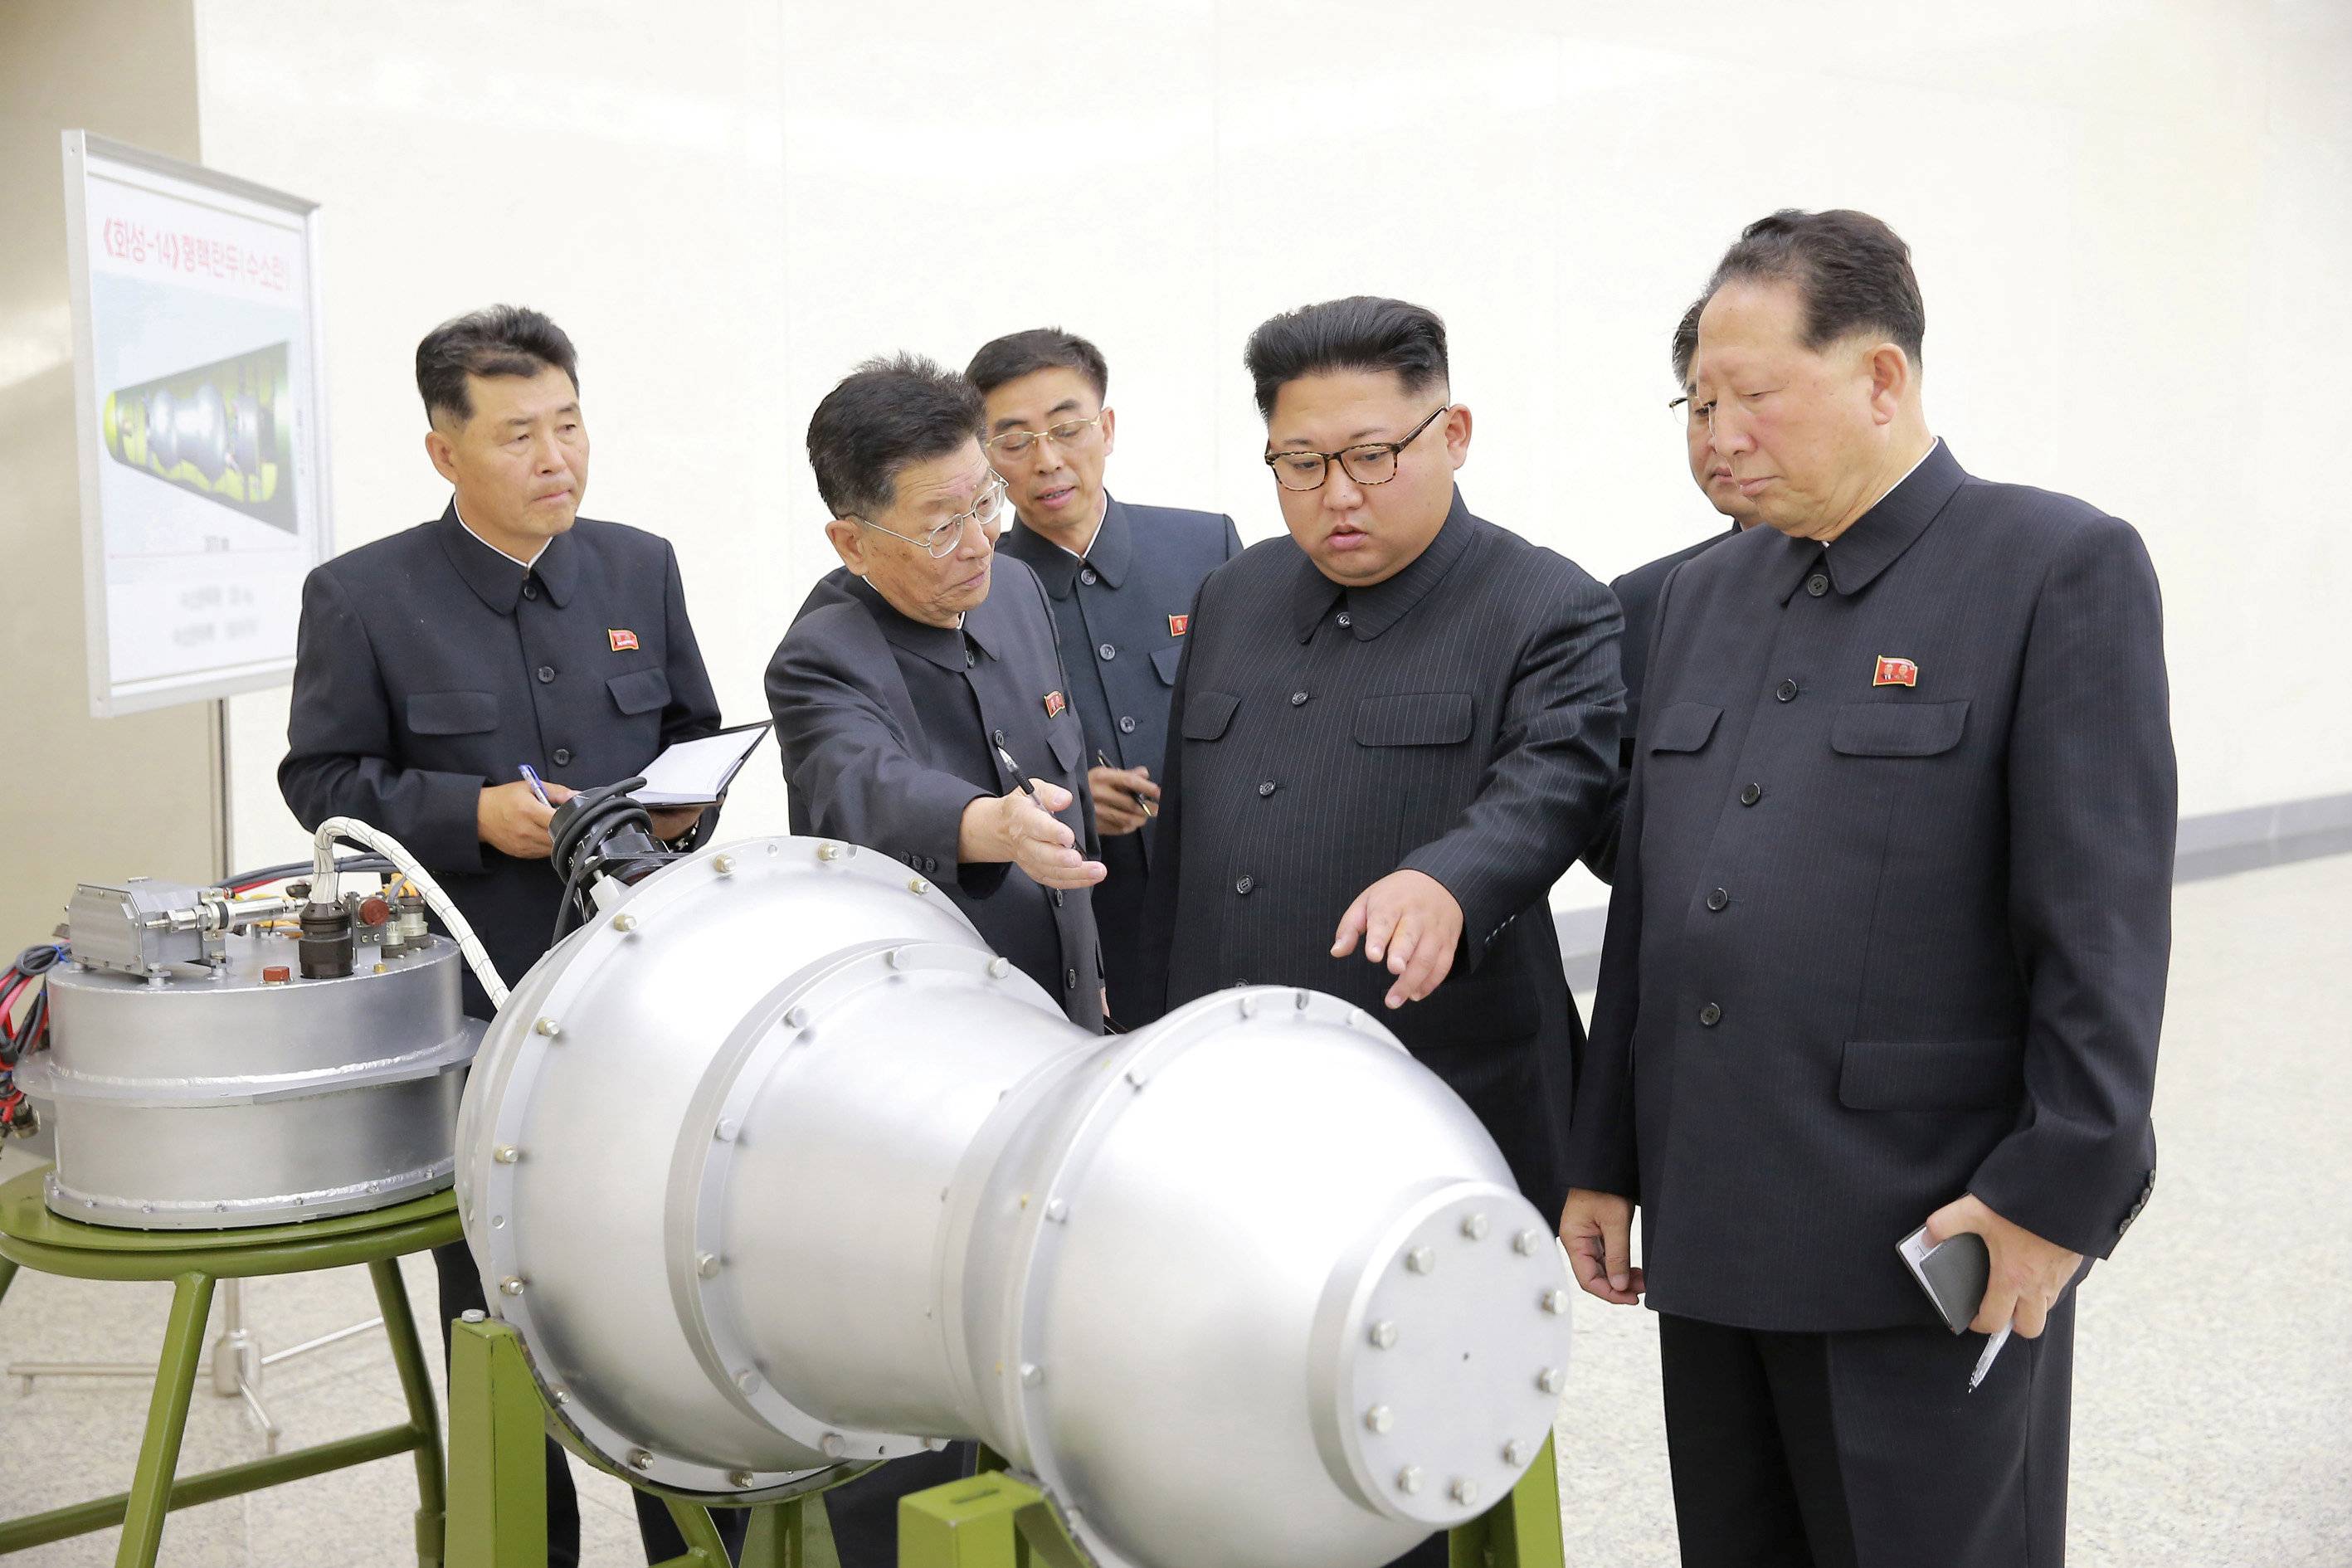 عسكريون يشرحون لزعيم كوريا الشمالية مكونات القنبلة الهيدروجينية